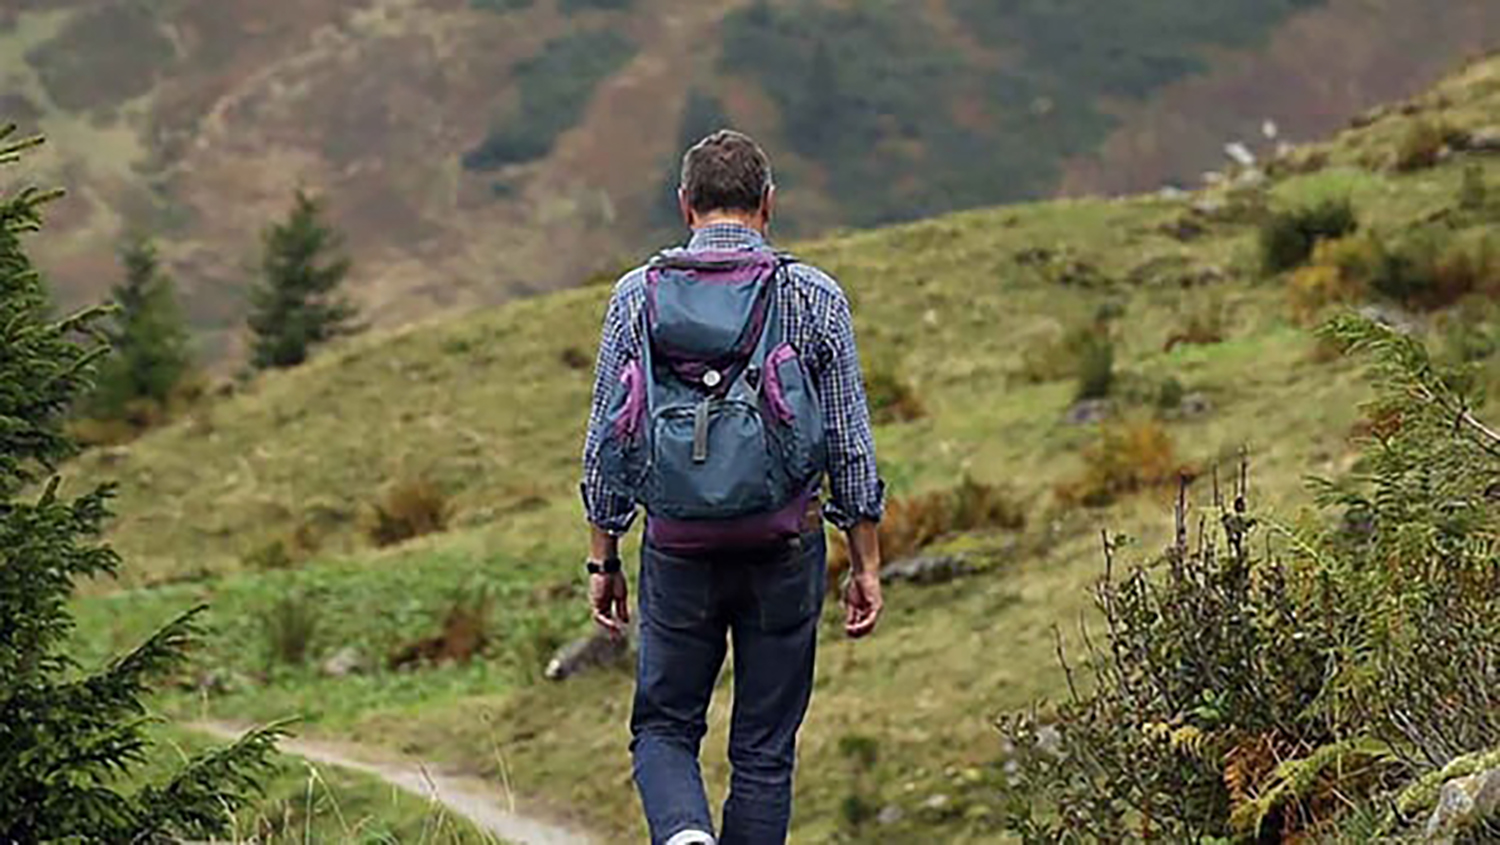 Caminar 6 km una o dos veces por semana reduce riesgo de muerte, según estudio